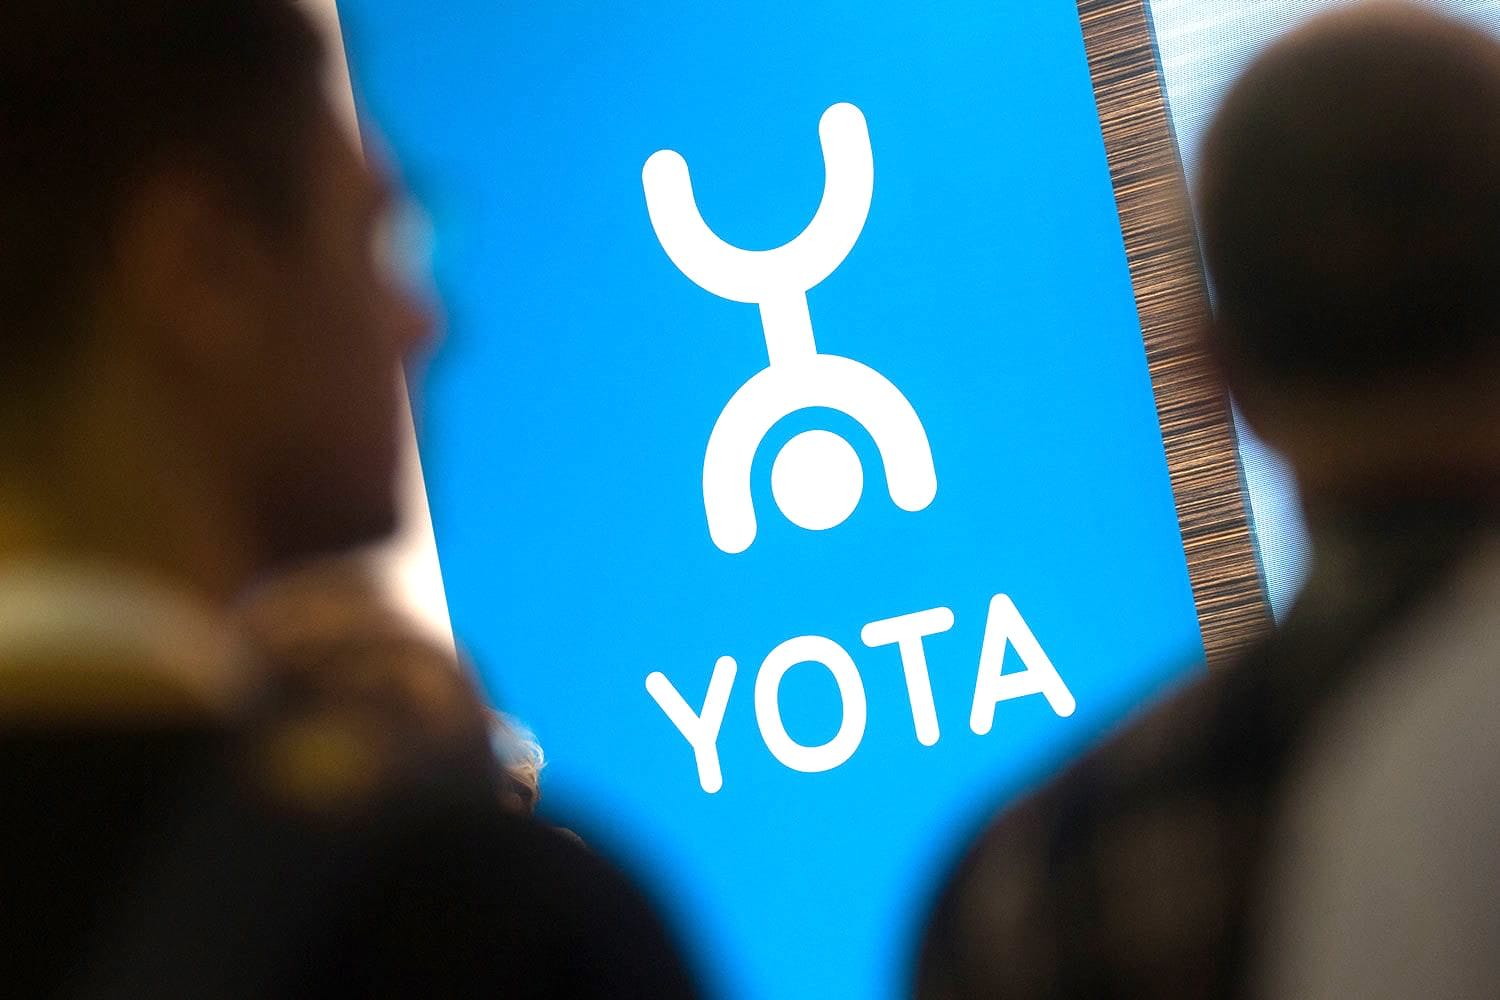 Оператор познаётся в беде… Yota разрешила бесплатно общаться в роуминге в WhatsApp и Viber